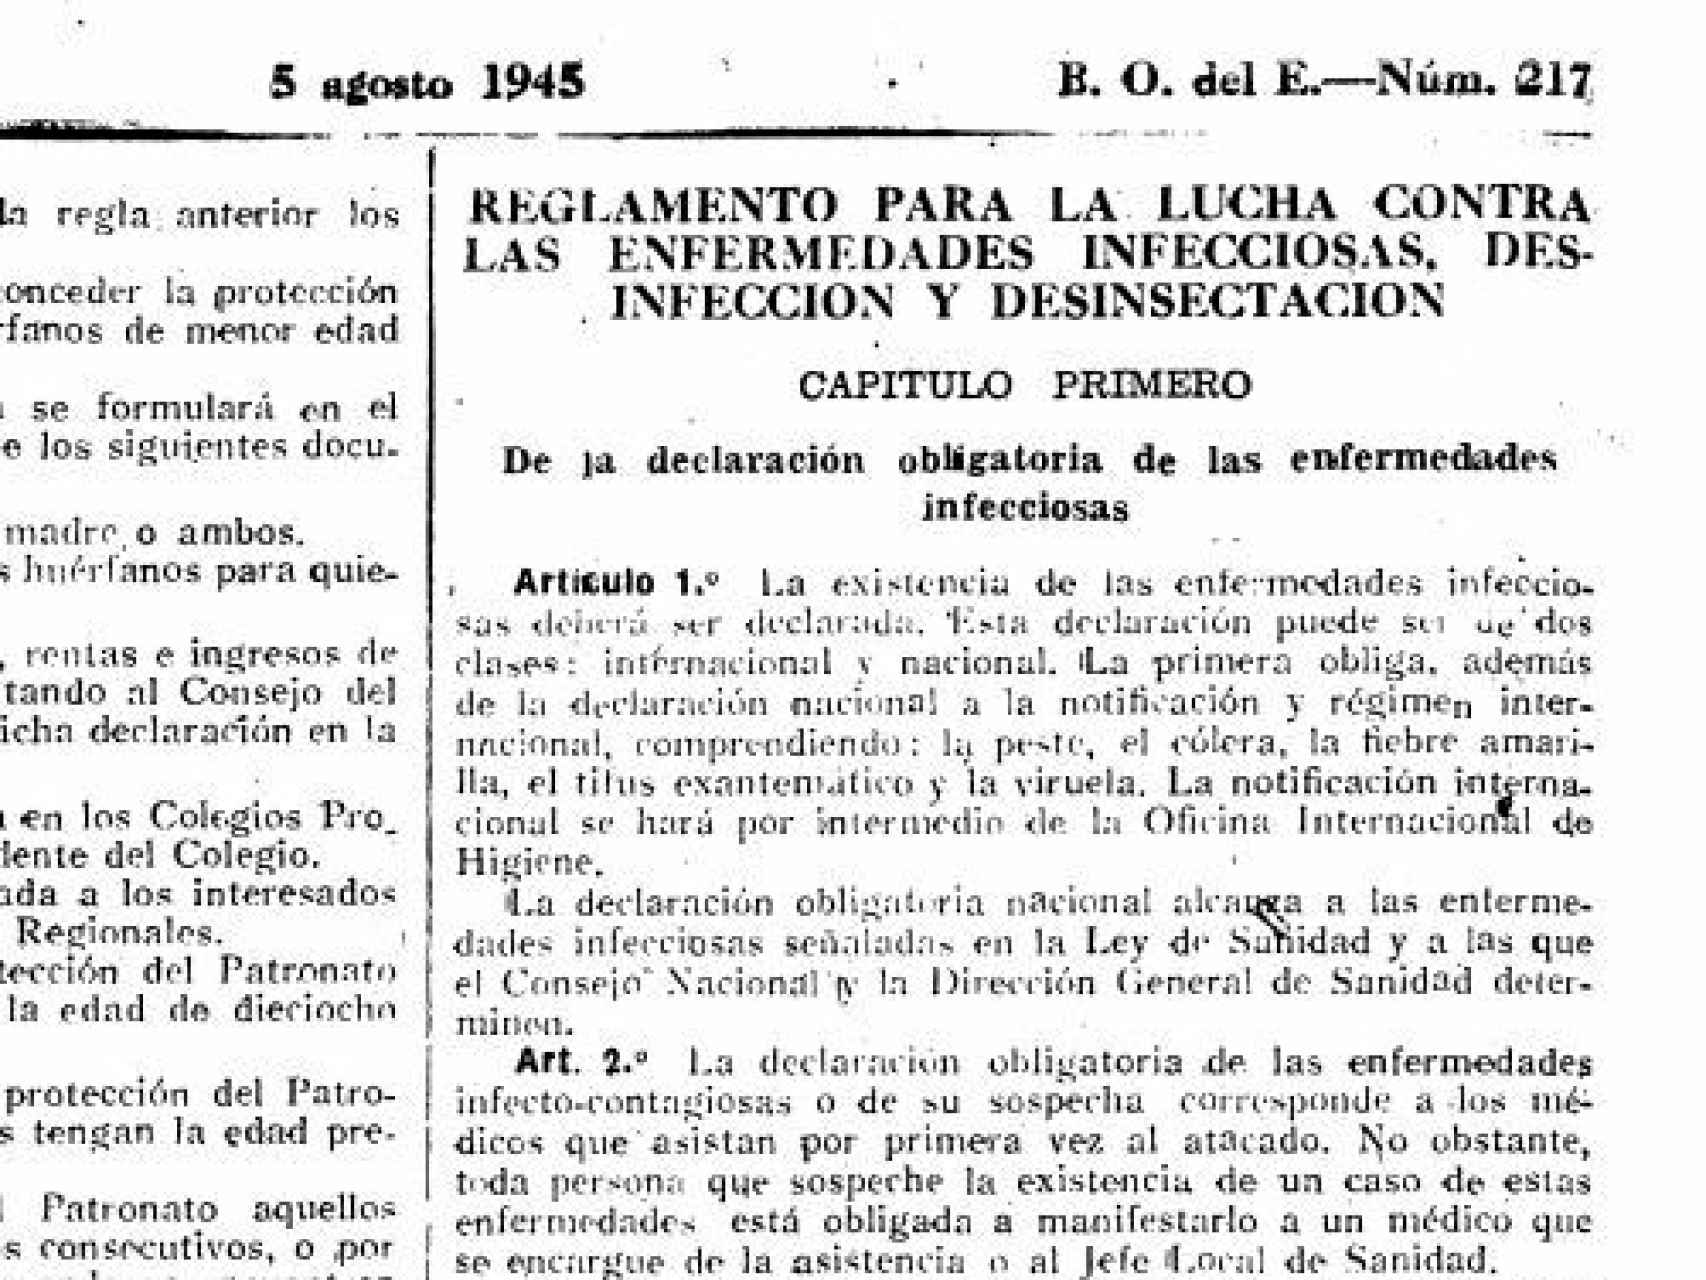 Decreto de 1945 que regulaba cómo luchar contra enfermedades infecciosas.